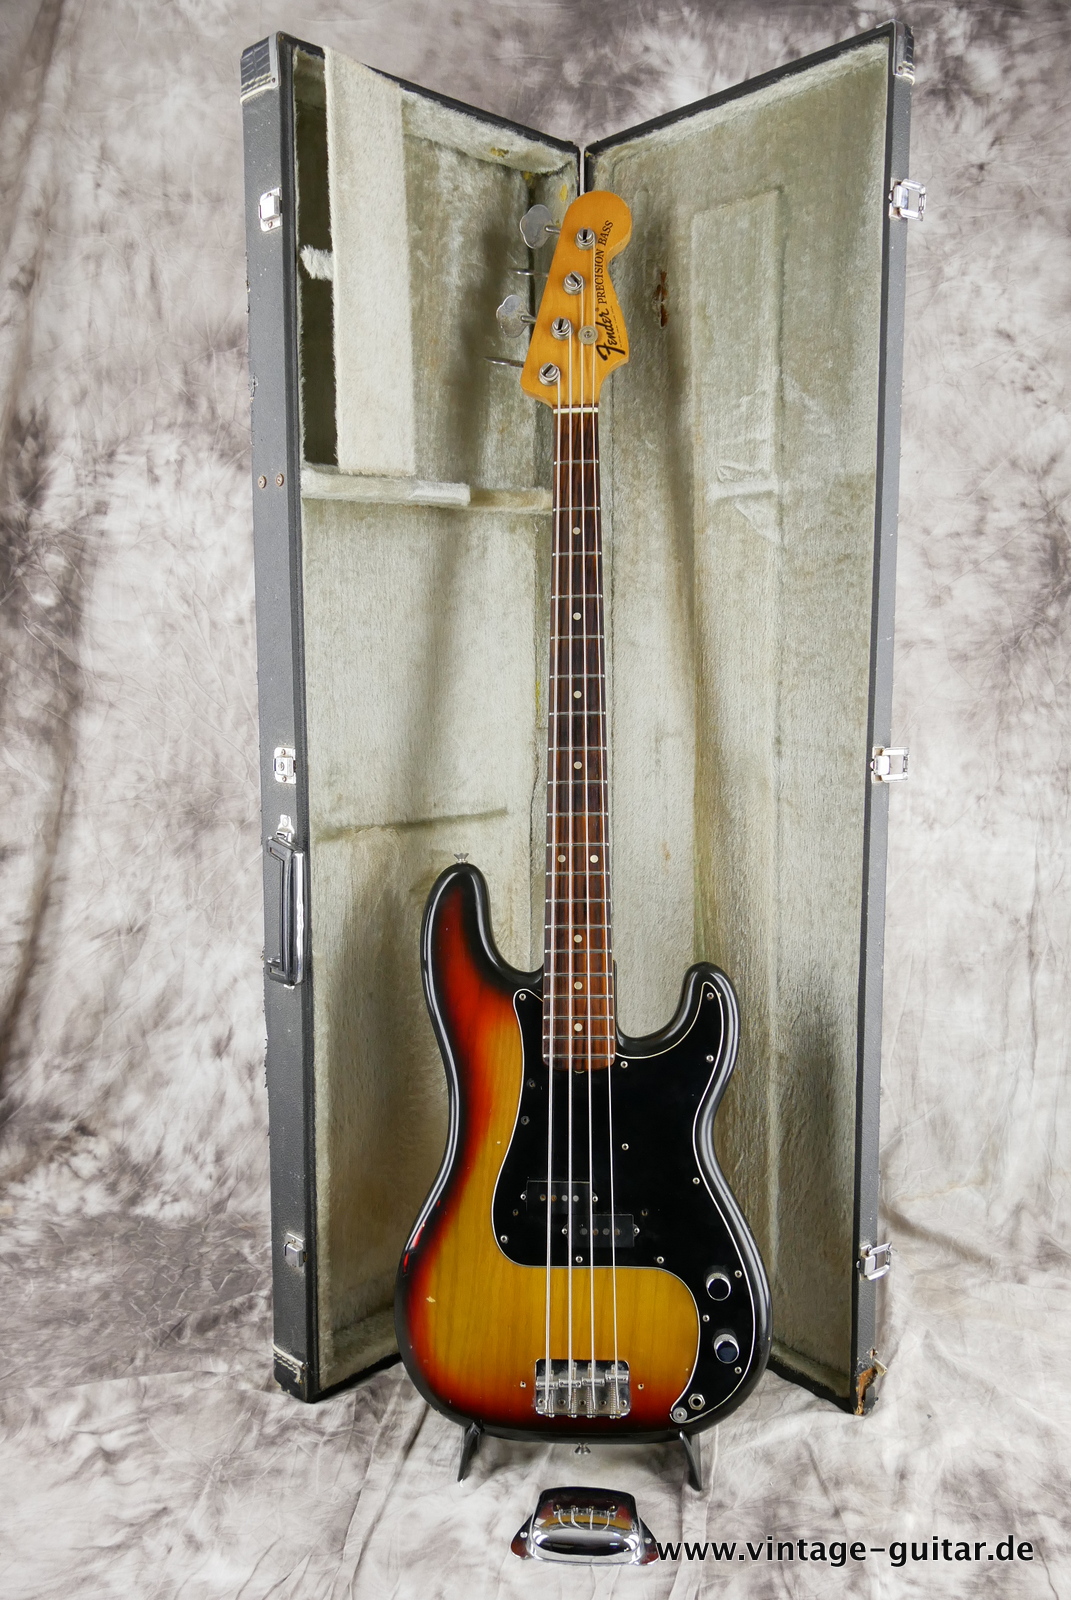 Fender_Precision_Bass_sunburst_1975-013.JPG